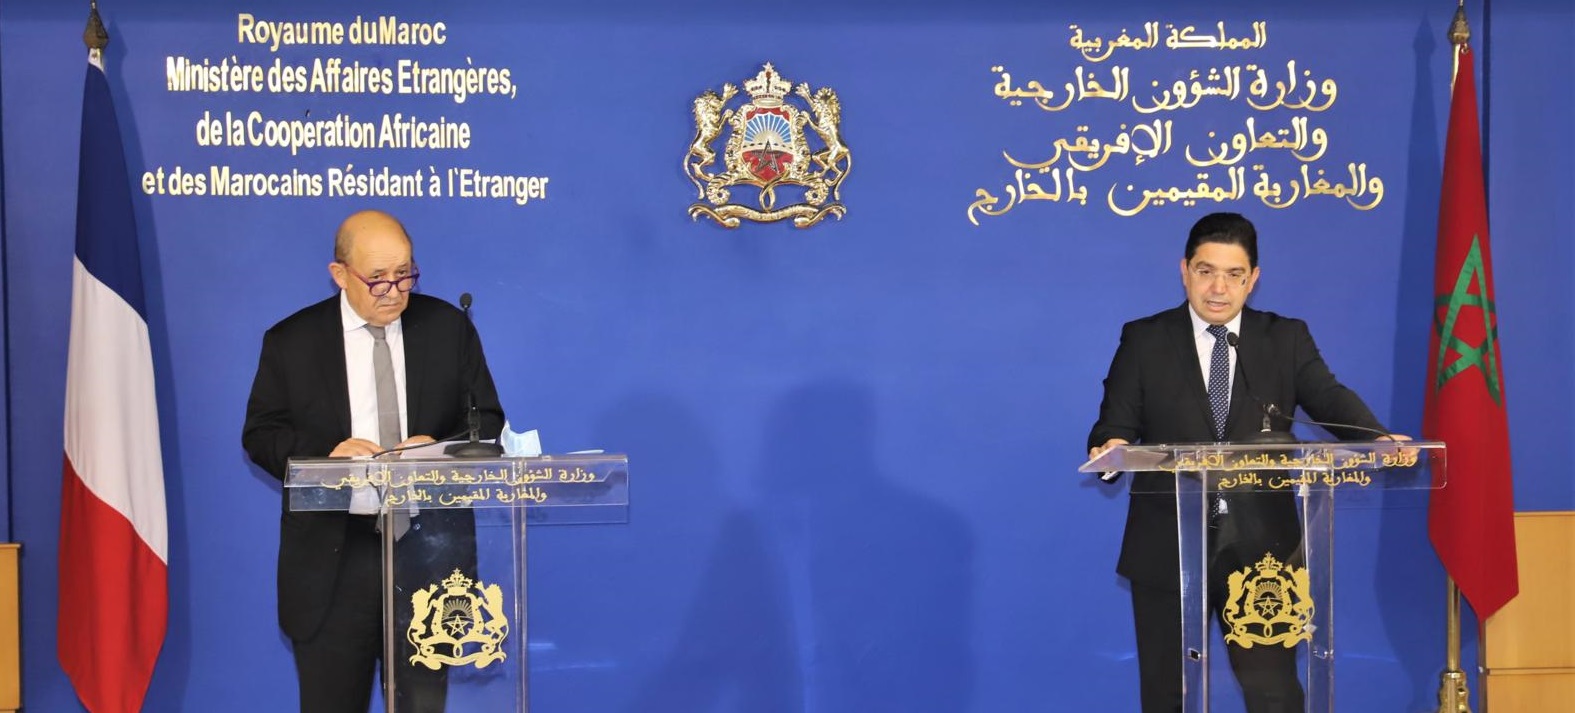 فرنسا تلتزم بتقوية الشراكة مع المغرب